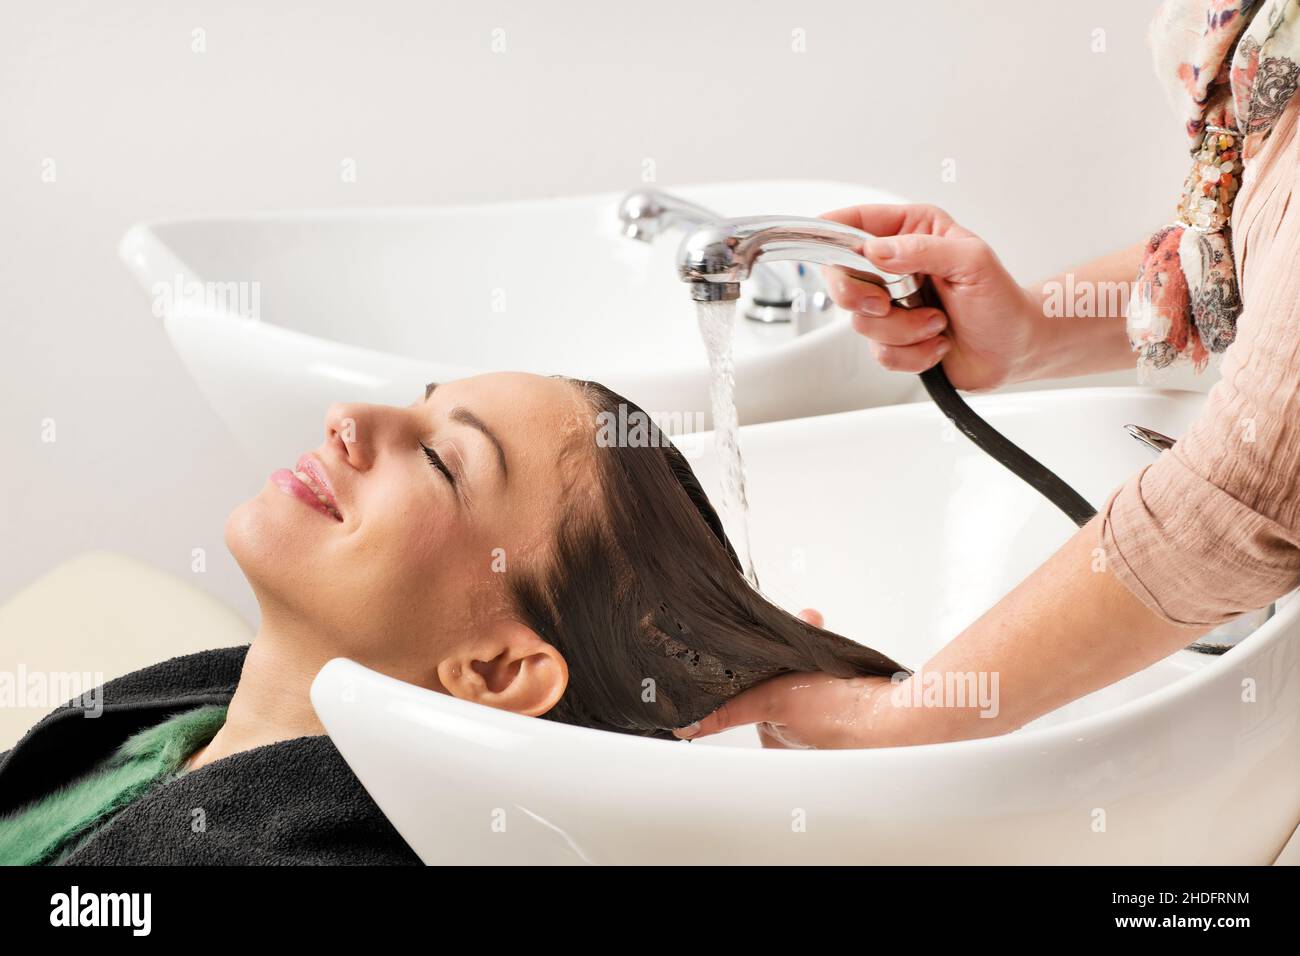 relax, lavaggio dei capelli, cura della bellezza occupazione, relax, lavaggio dei capelli, lavare i capelli, lavare i capelli, cura di bellezza occupazioni Foto Stock